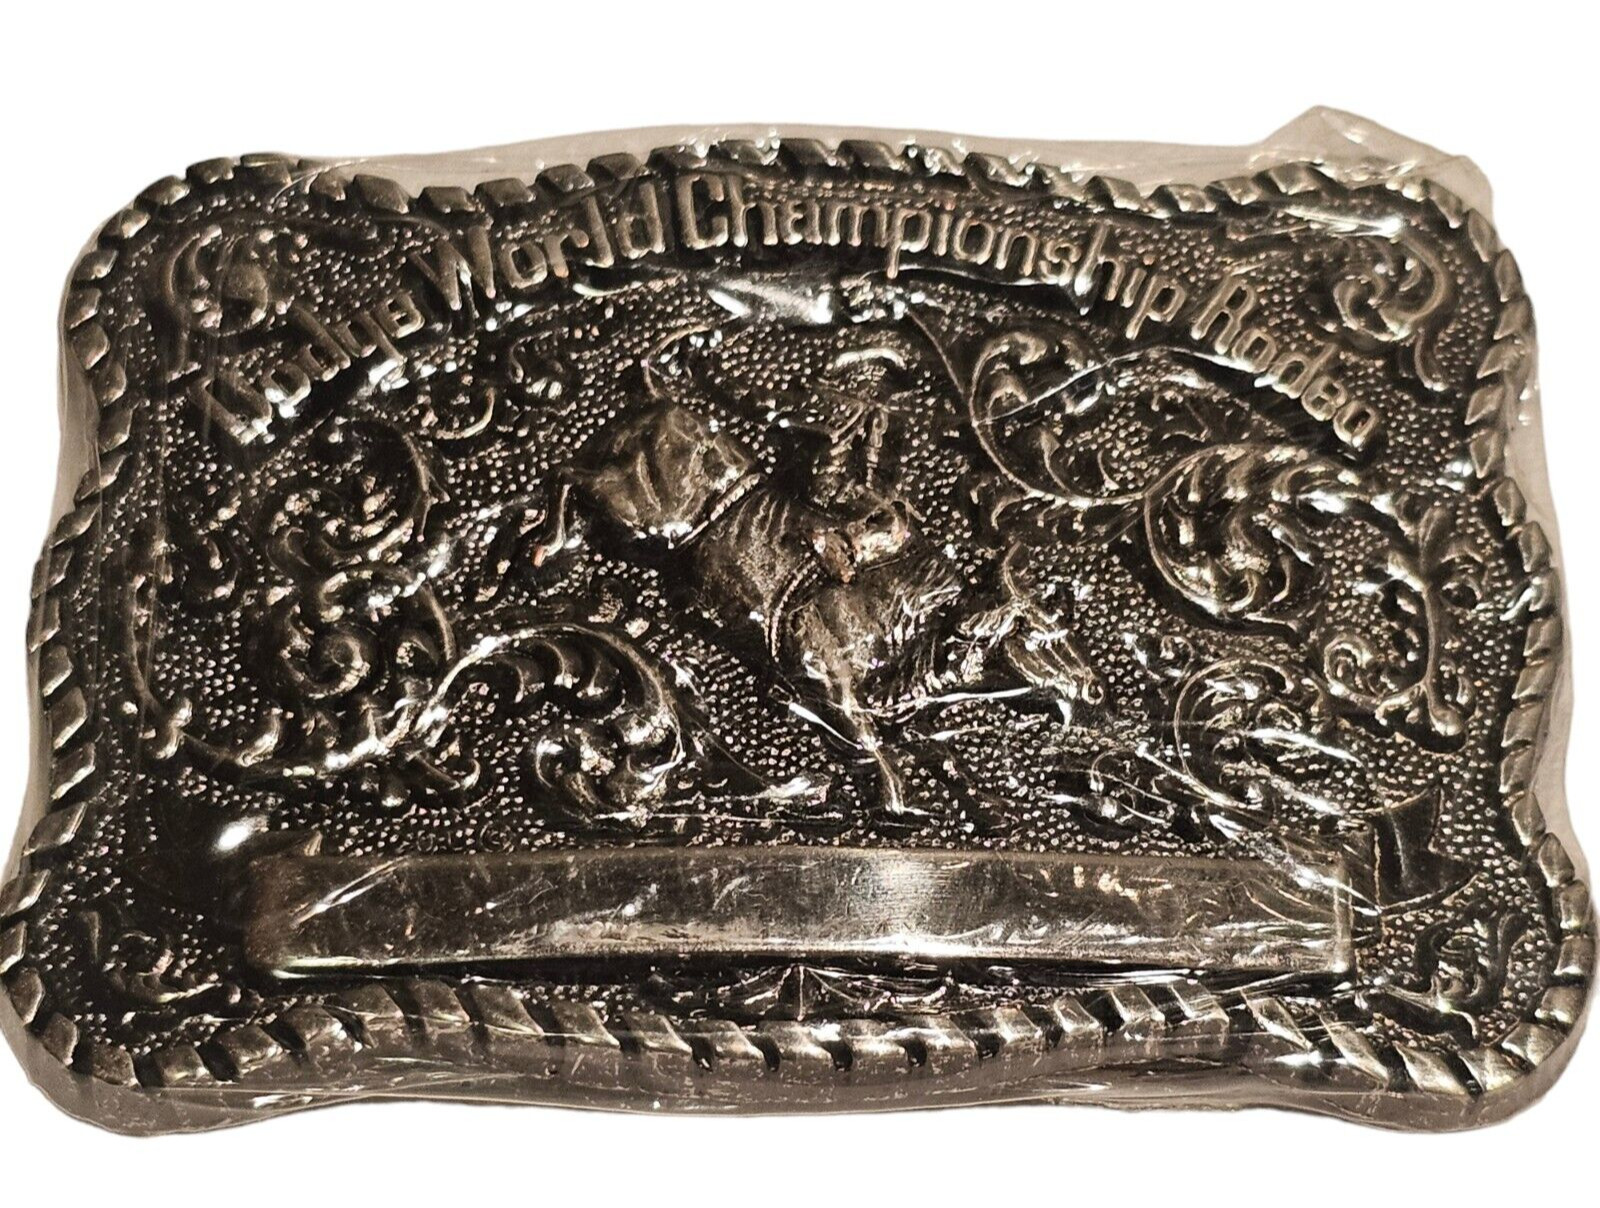 Dodge World Championship Rodeo Trophy Belt Buckle - Award Design Medals - NOS